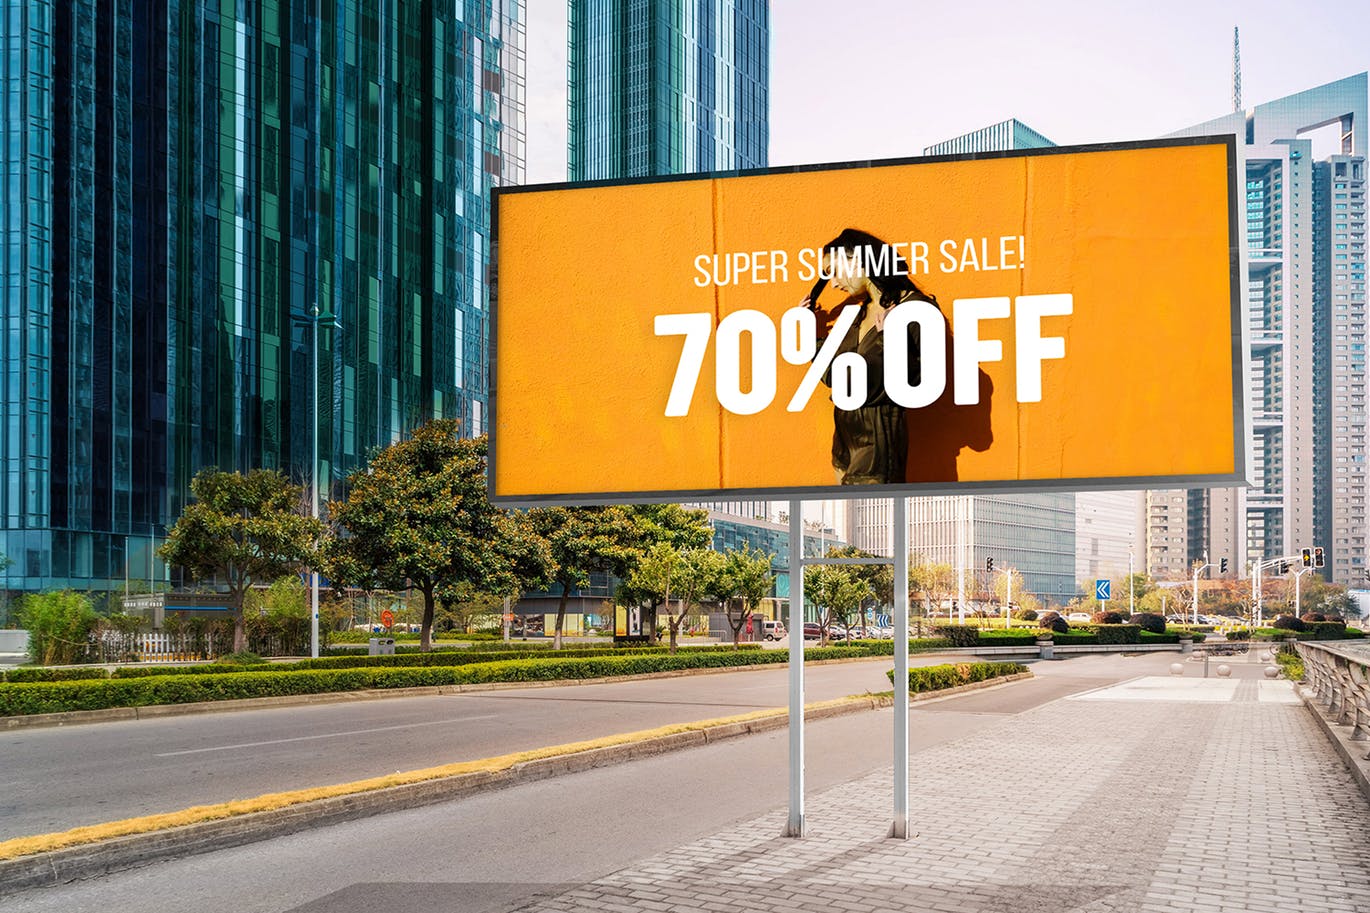 户外公路大型广告牌广告设计展示效果图样机 Advertising Billboard Mockup插图(3)